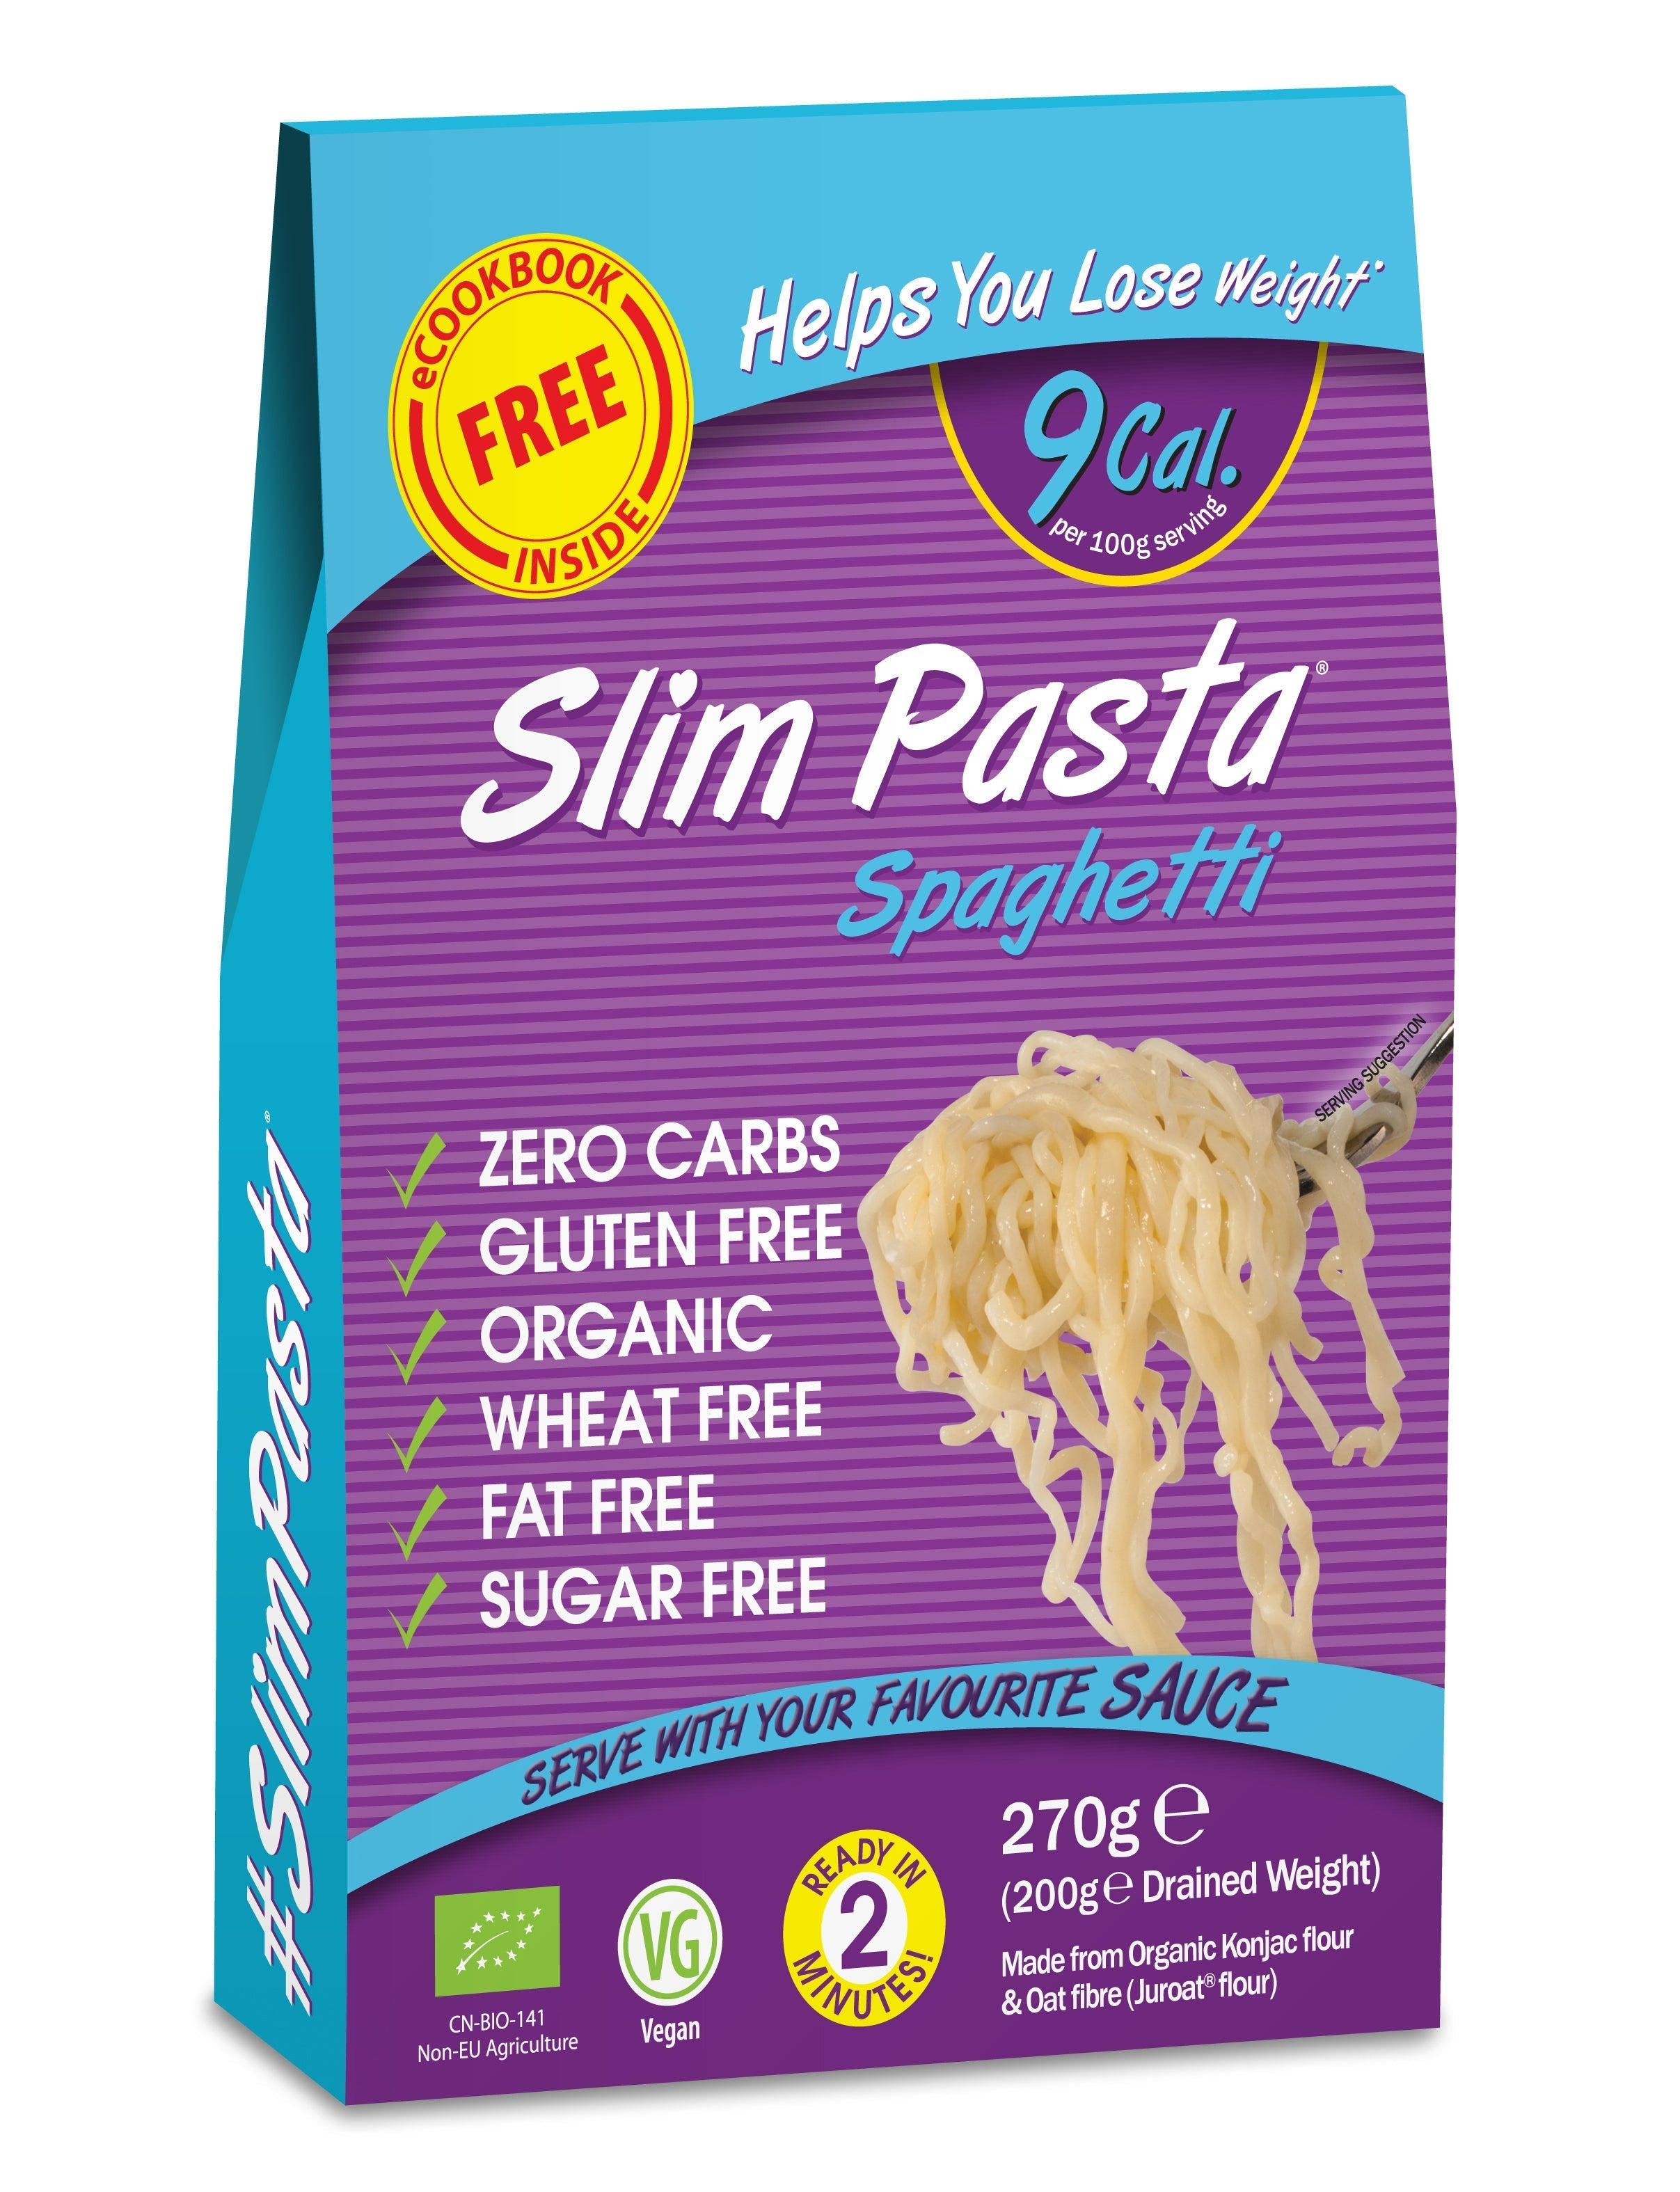 Slim Pasta Spaghetti 270g